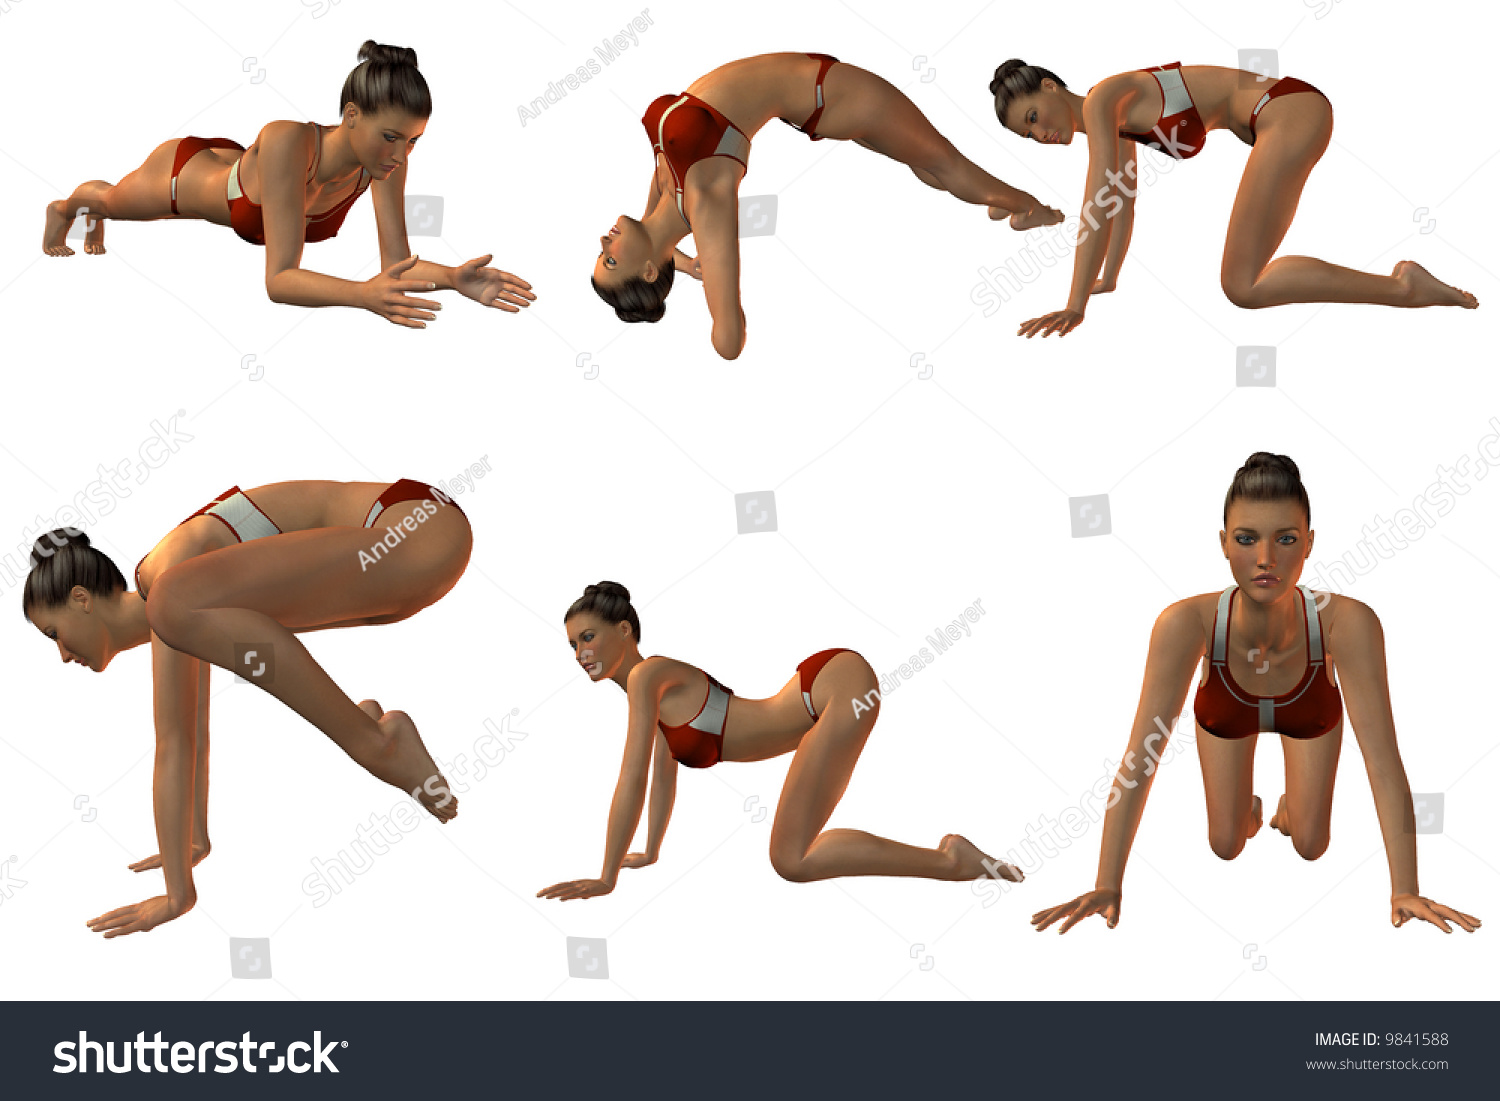 Sexy Yoga Photos